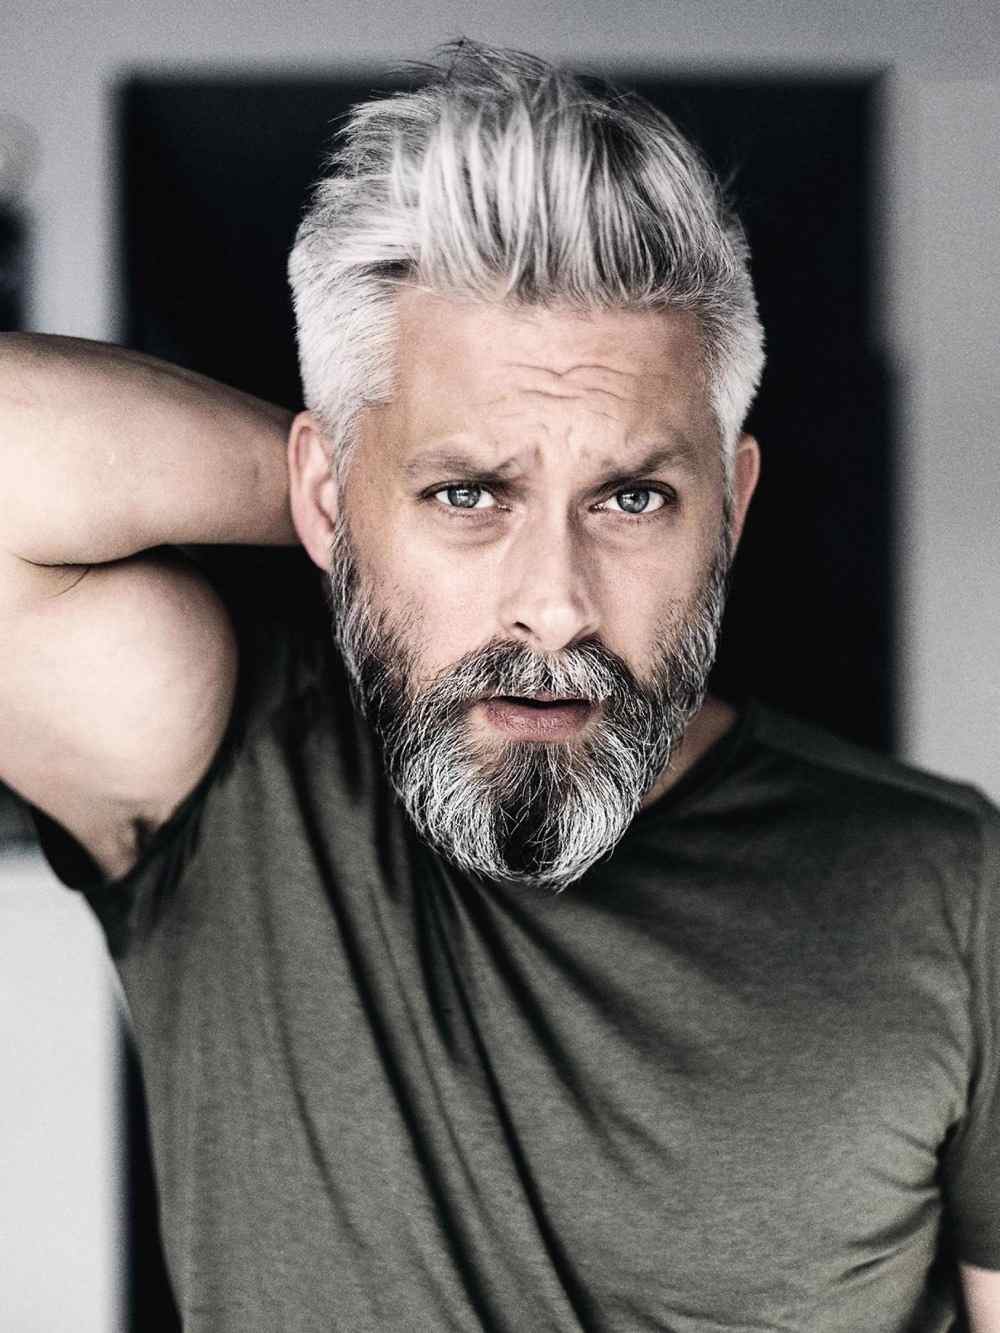 silver fox silver hair modern wear with beard for older men